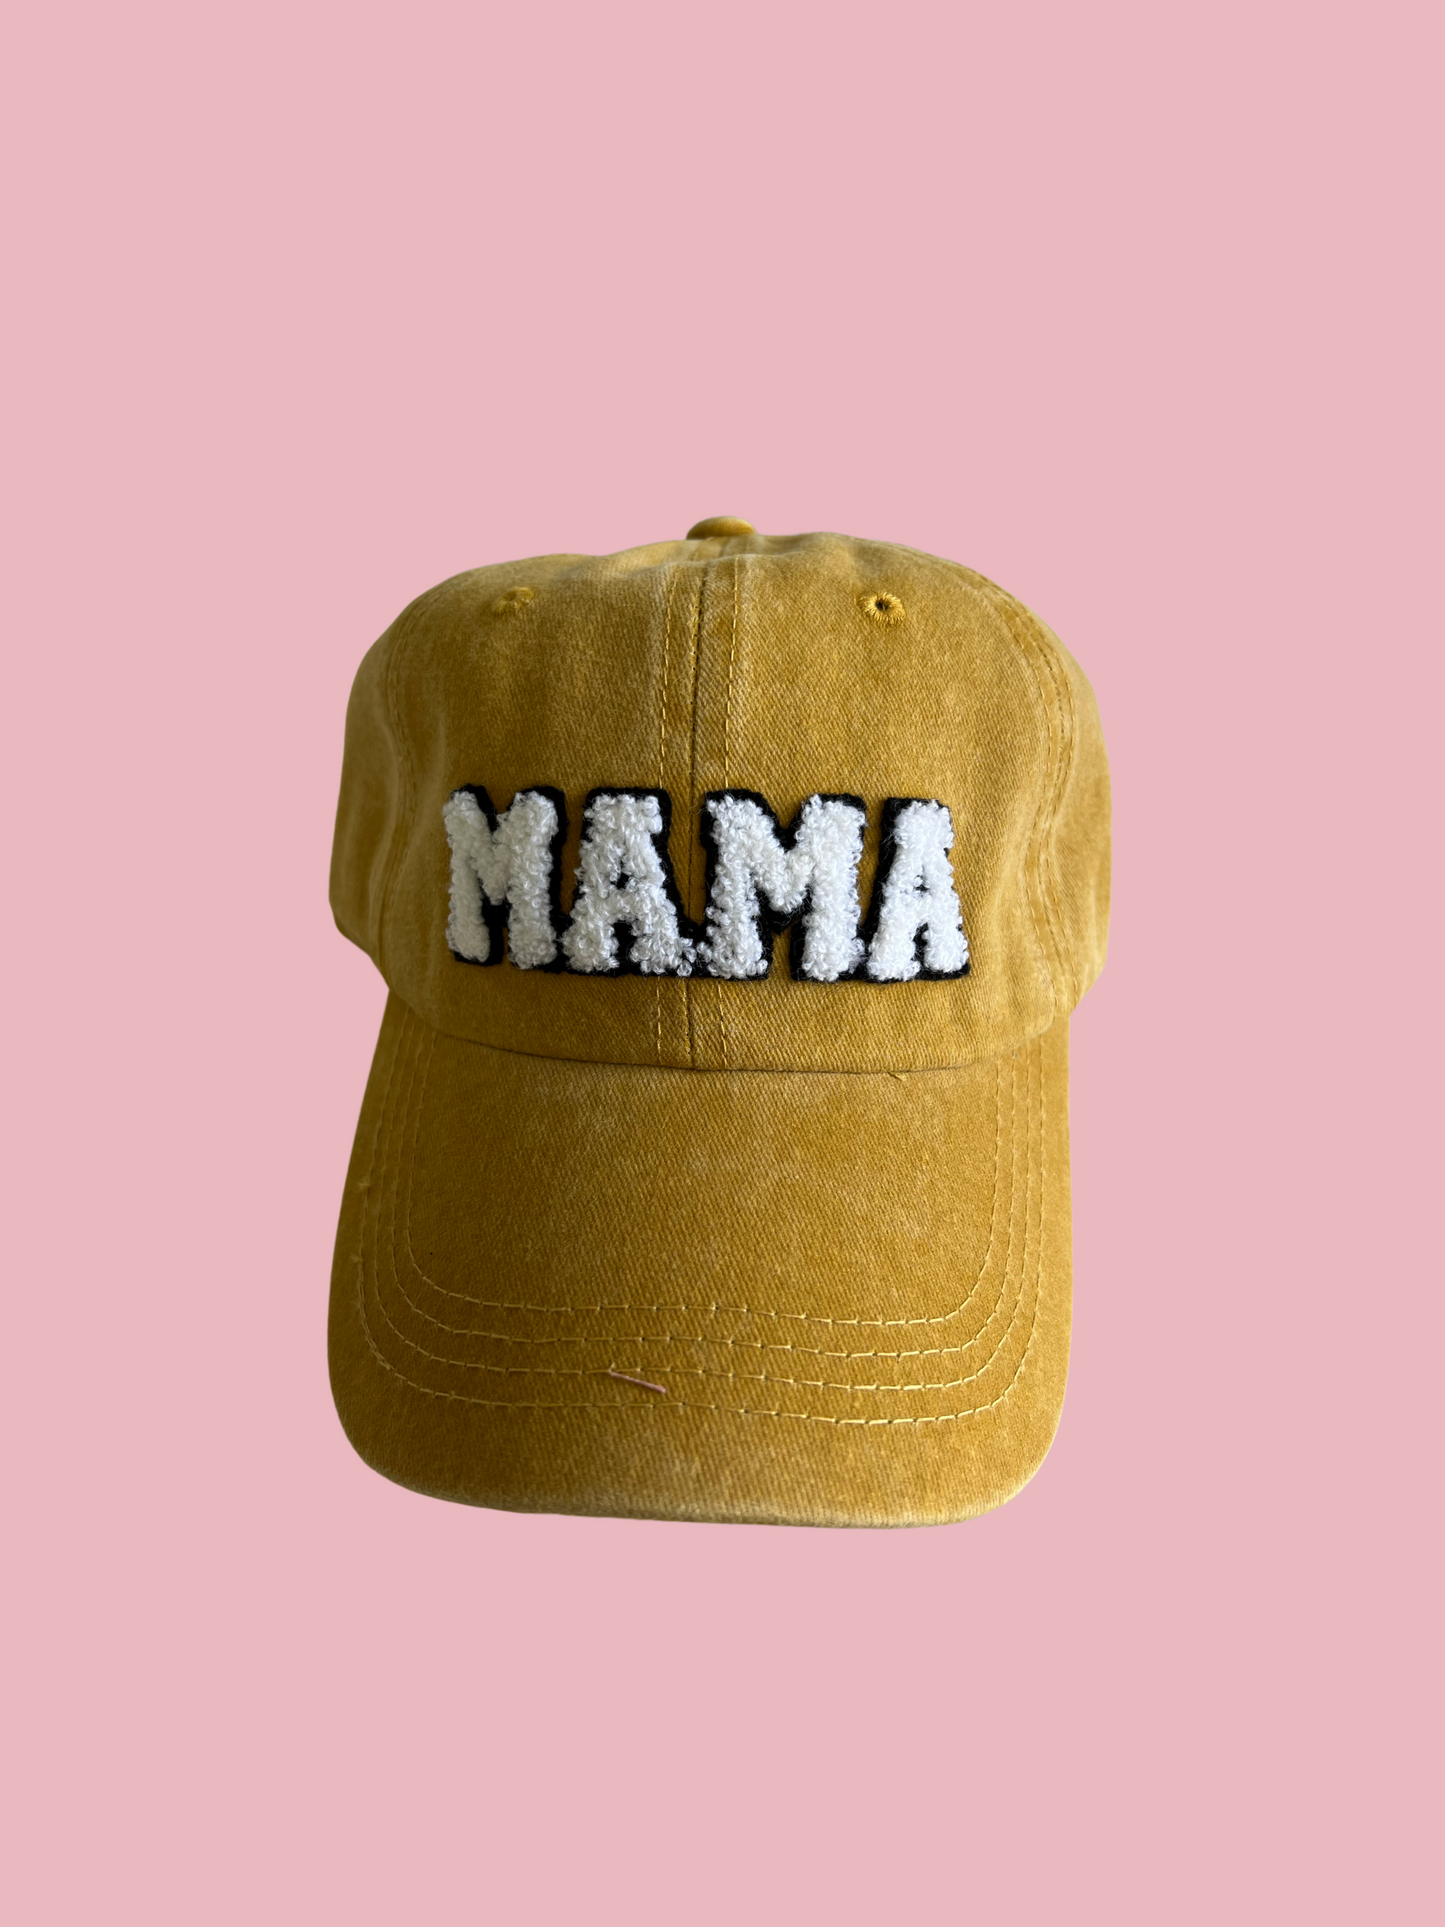 Mama Hat